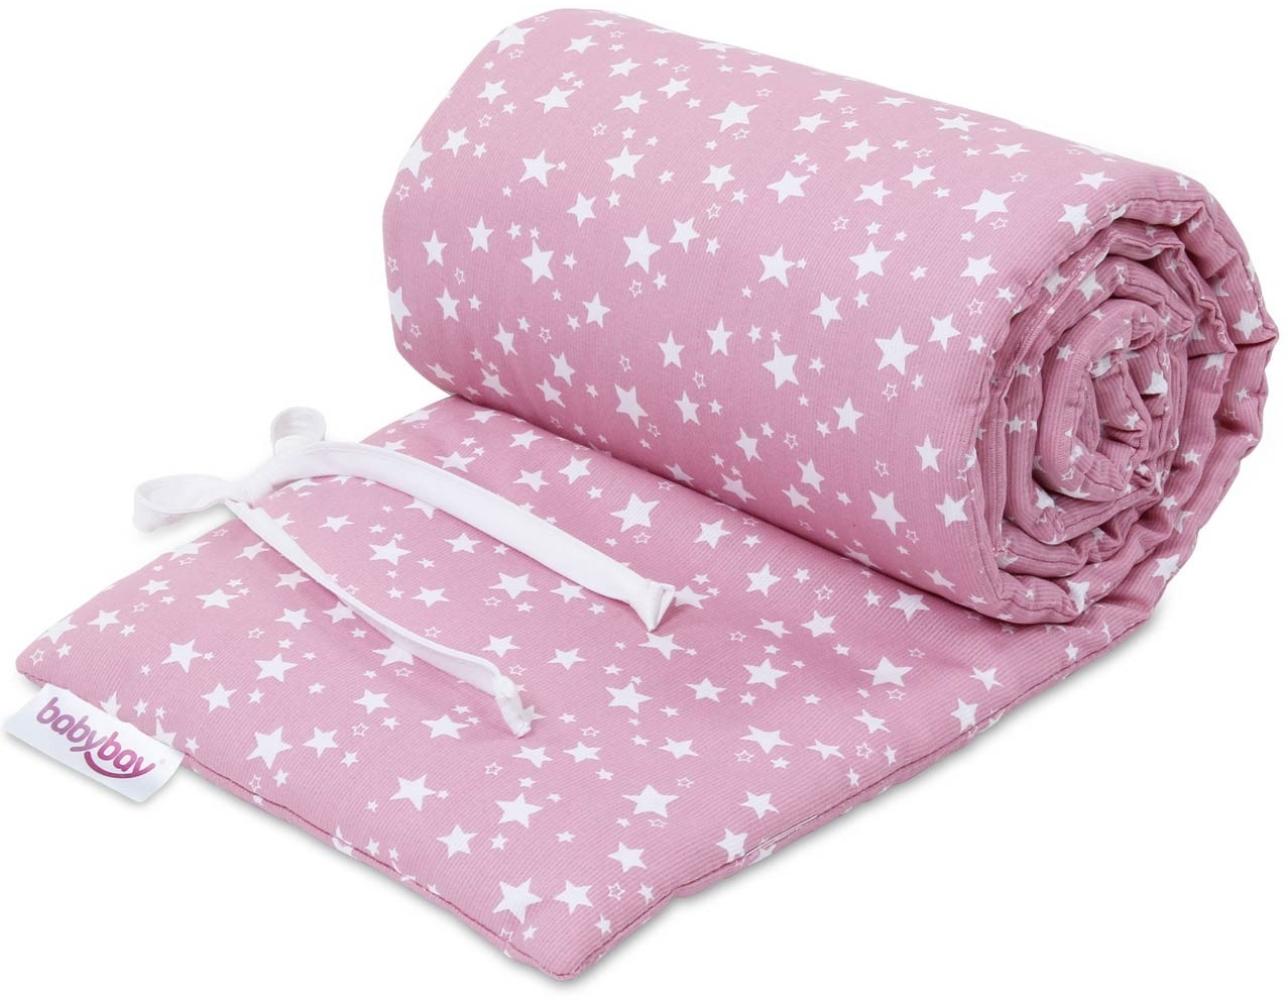 Babybay 'Piqué' Bettnestchen für Babybay Original pink/weiß,Sterne Bild 1